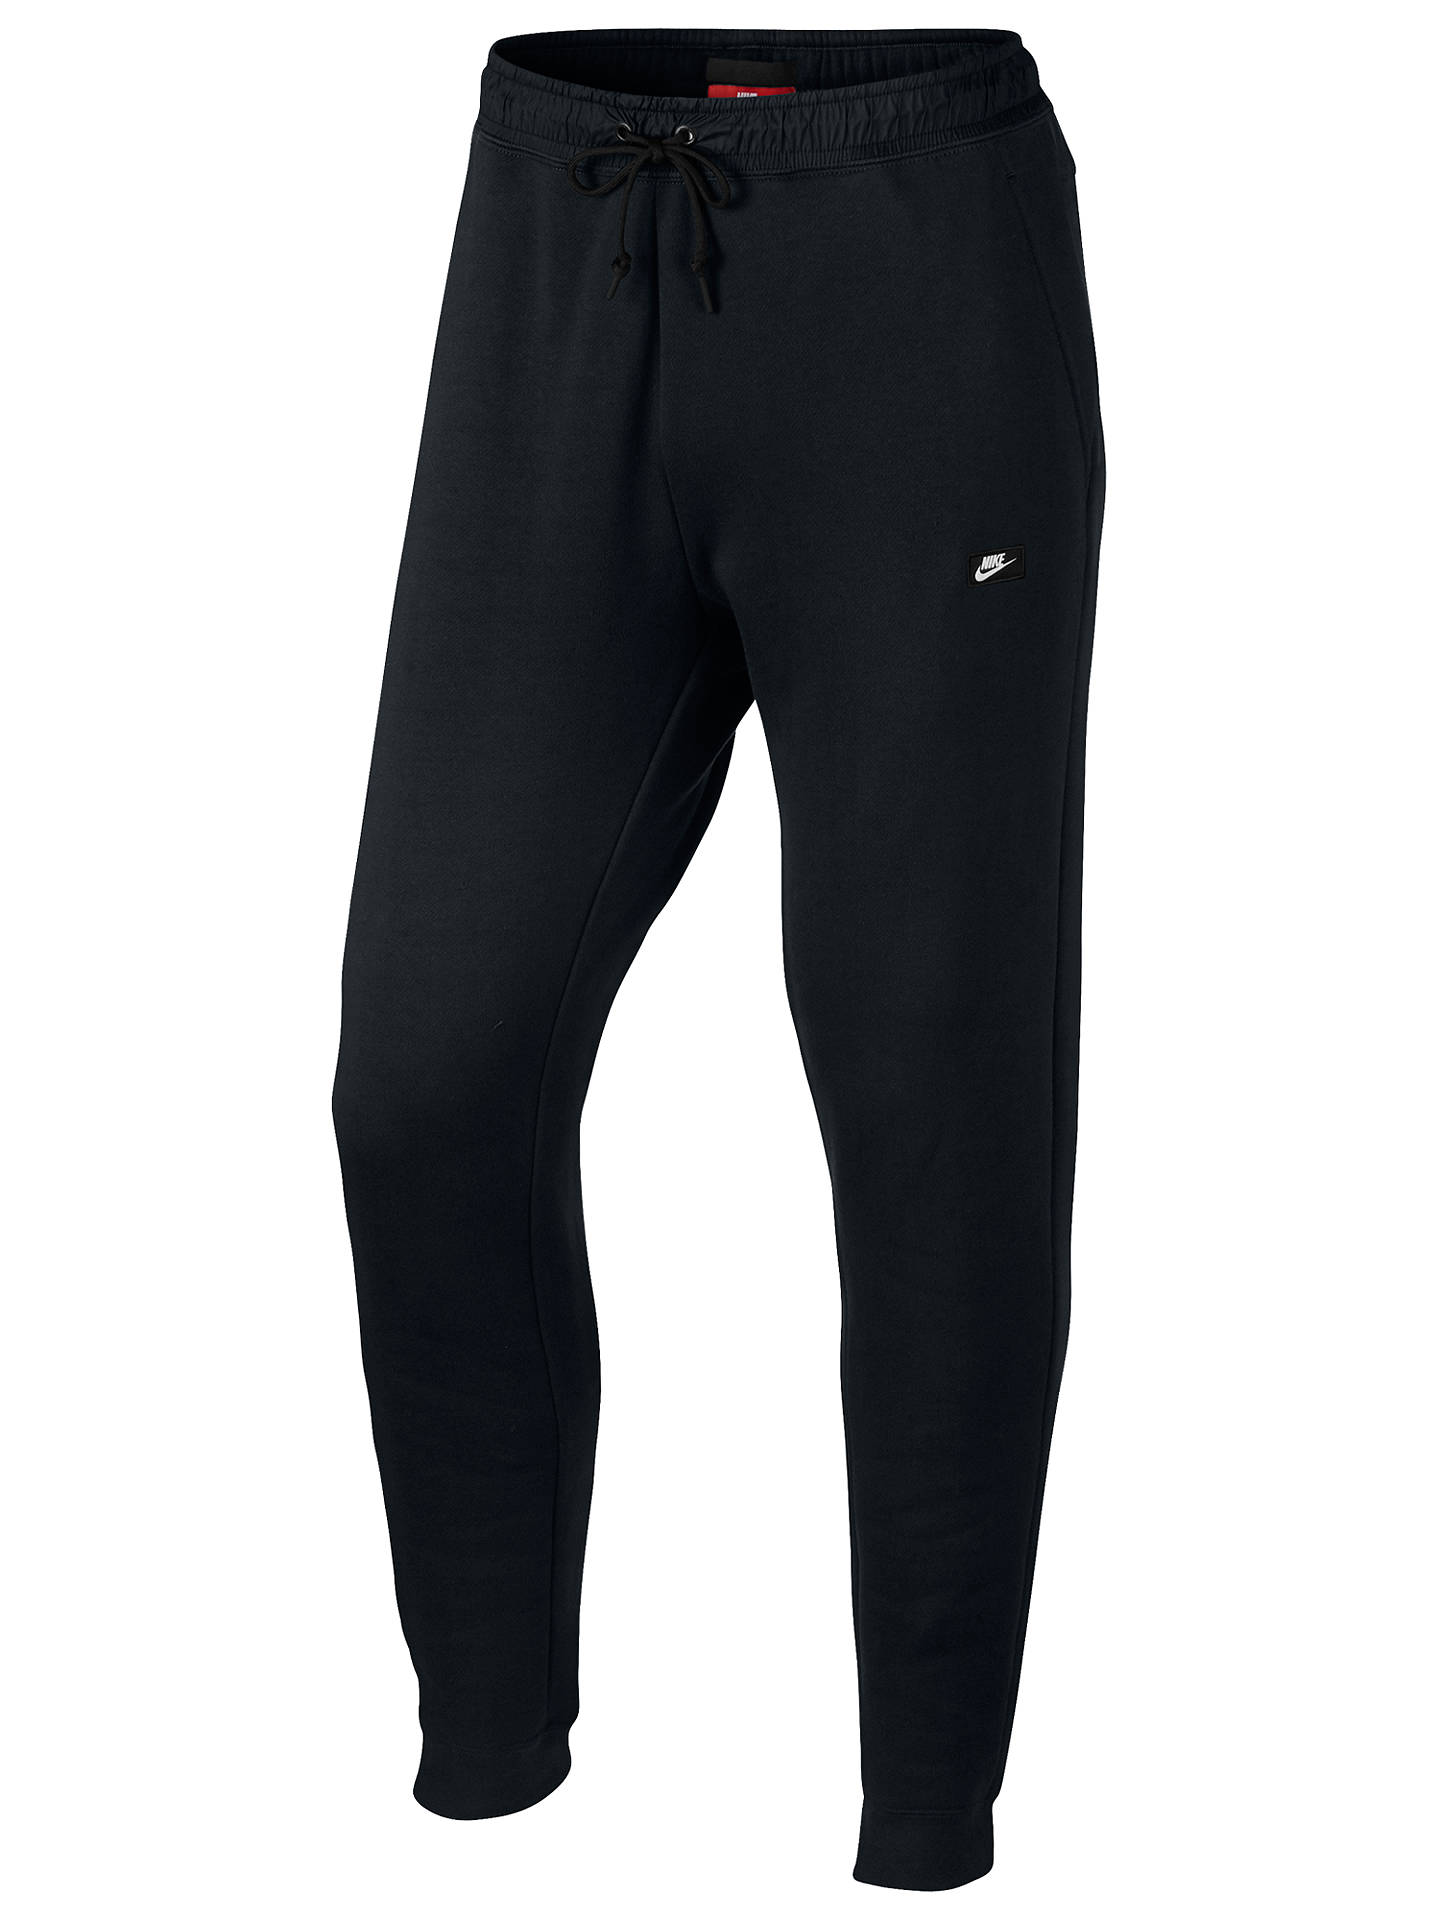 Nike Sportswear Modern Jogging Bottoms at John Lewis & Partners